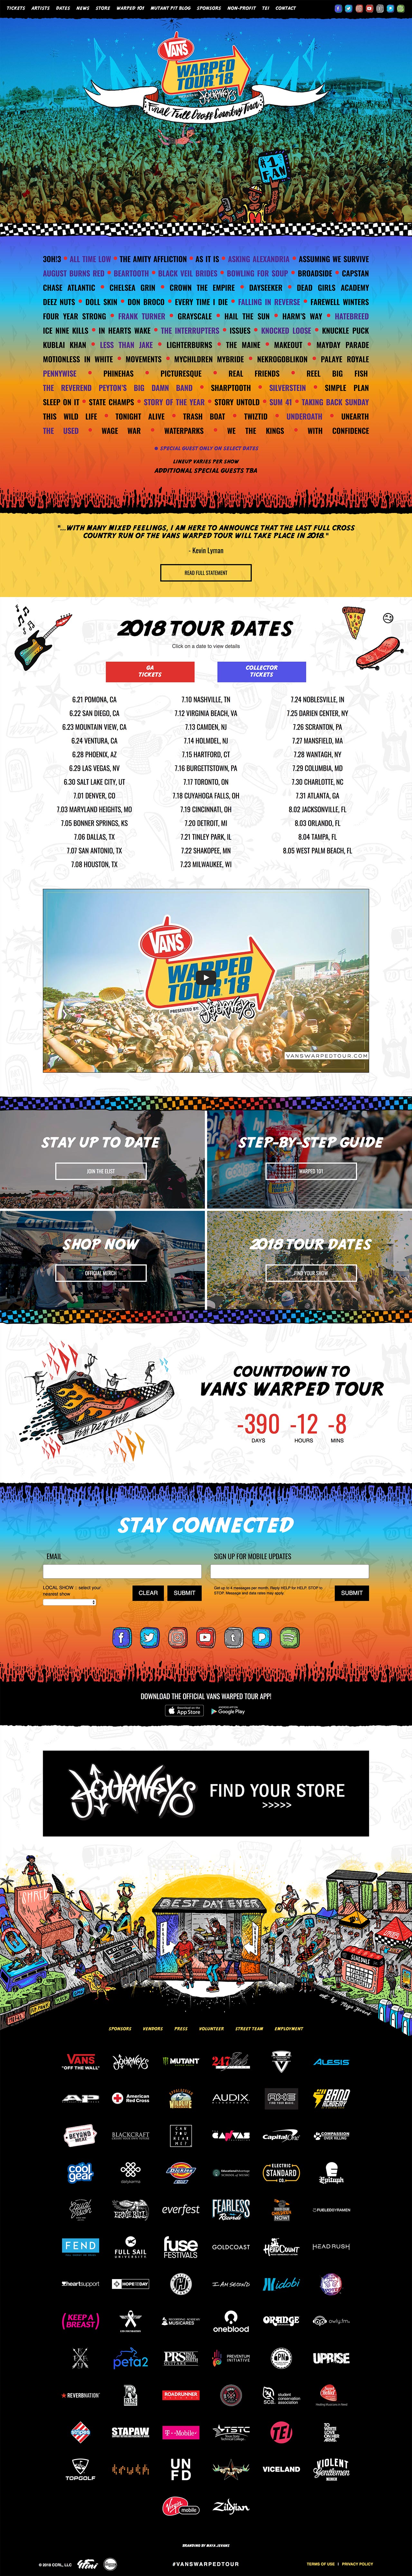 Vans Warped Tour Website - Desktop